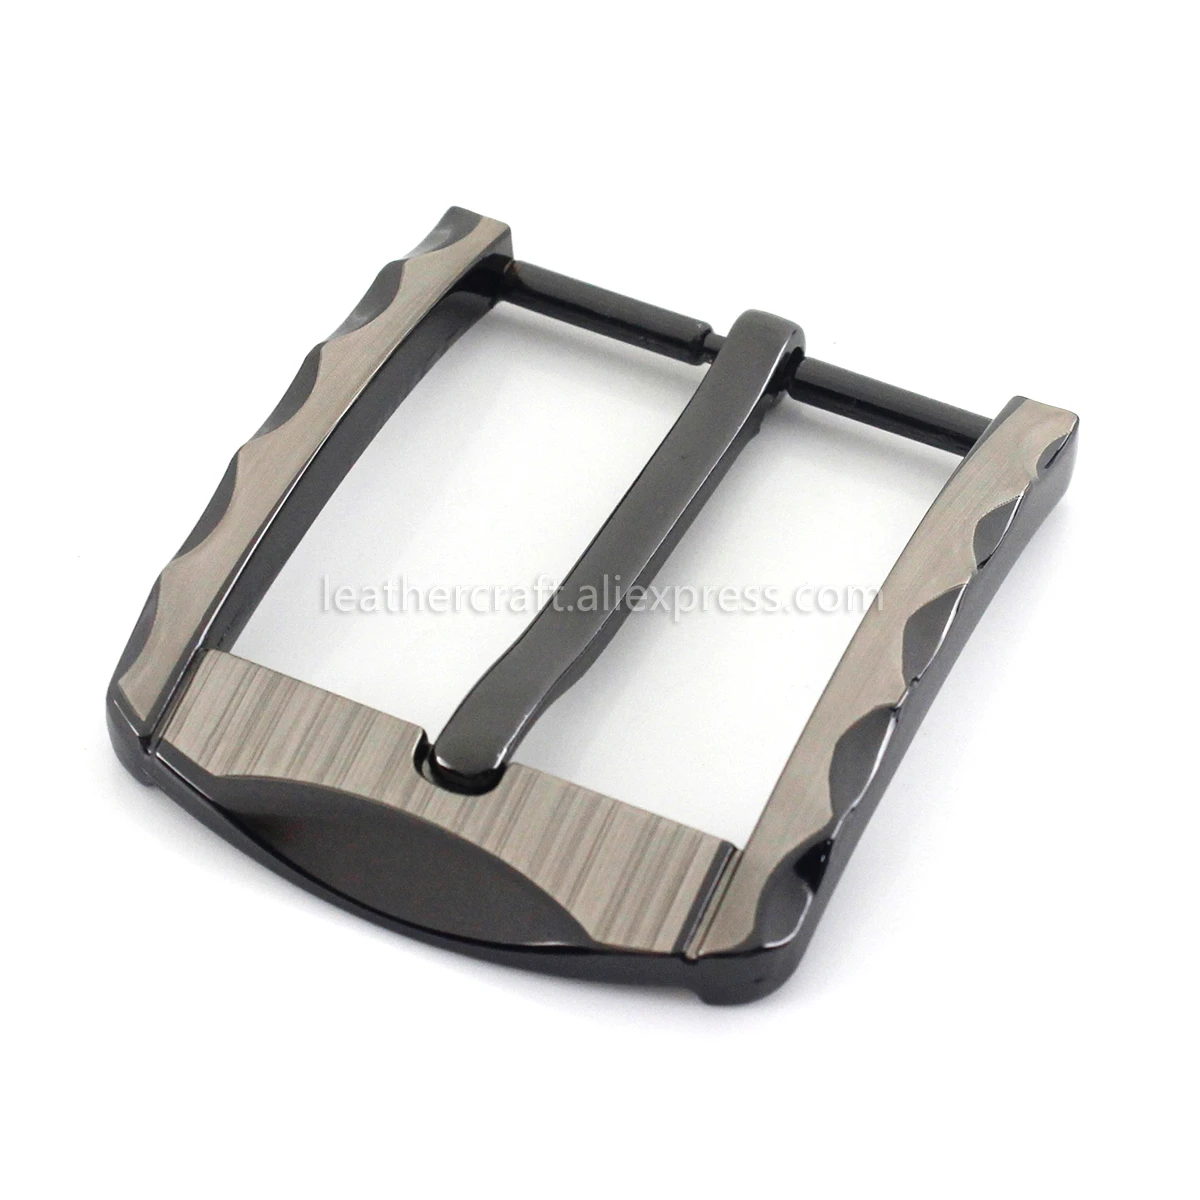 1pcs 40mm Metal Tri Glide Belt Buckle Middle Center Bar Men's  Single Pin Buckle Leather Belt bridle halter Harness adjustment